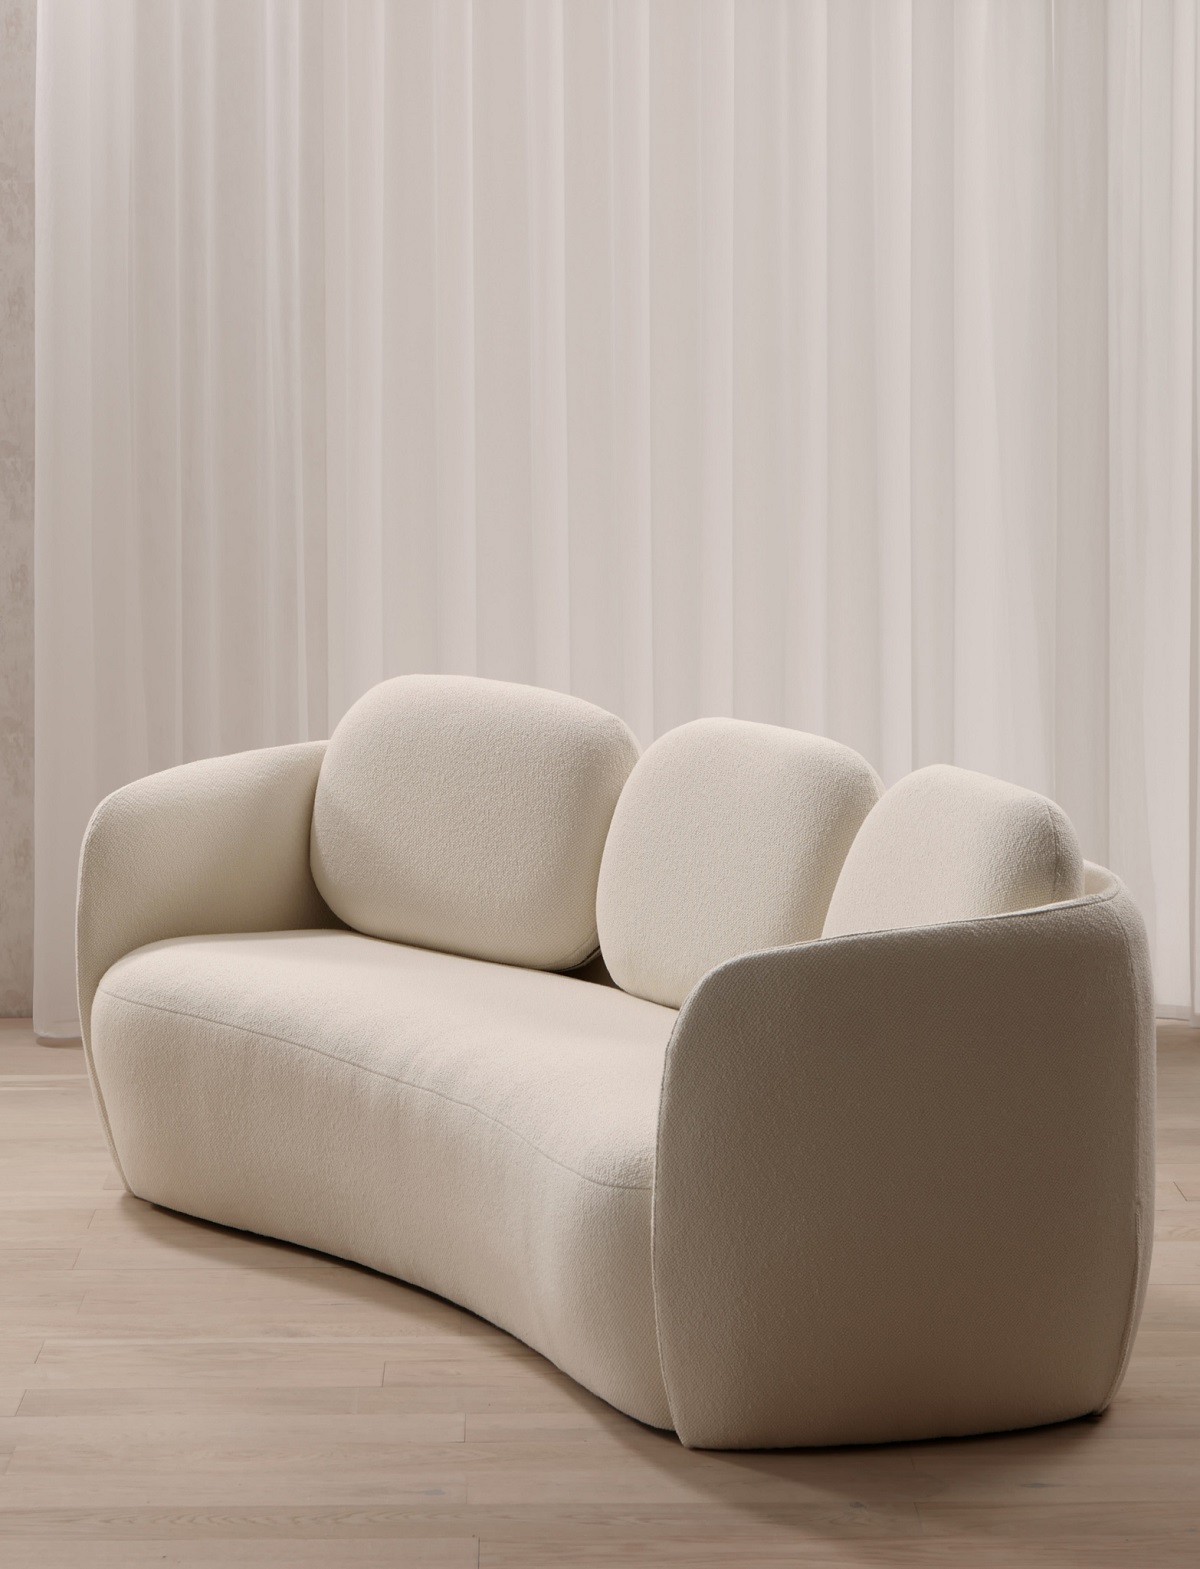 A soft 60s design sofa